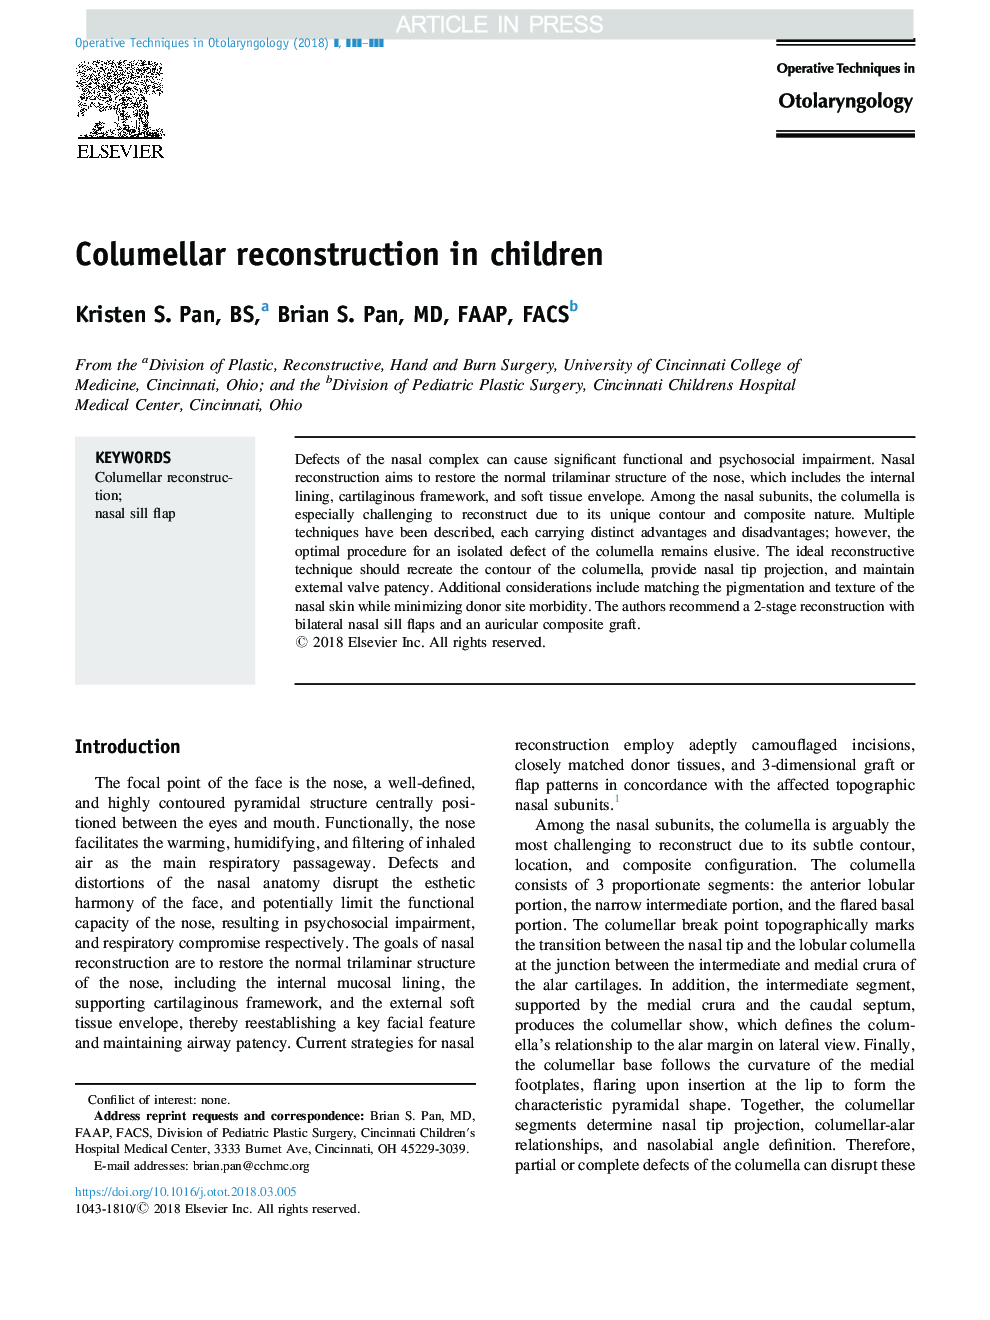 Columellar reconstruction in children